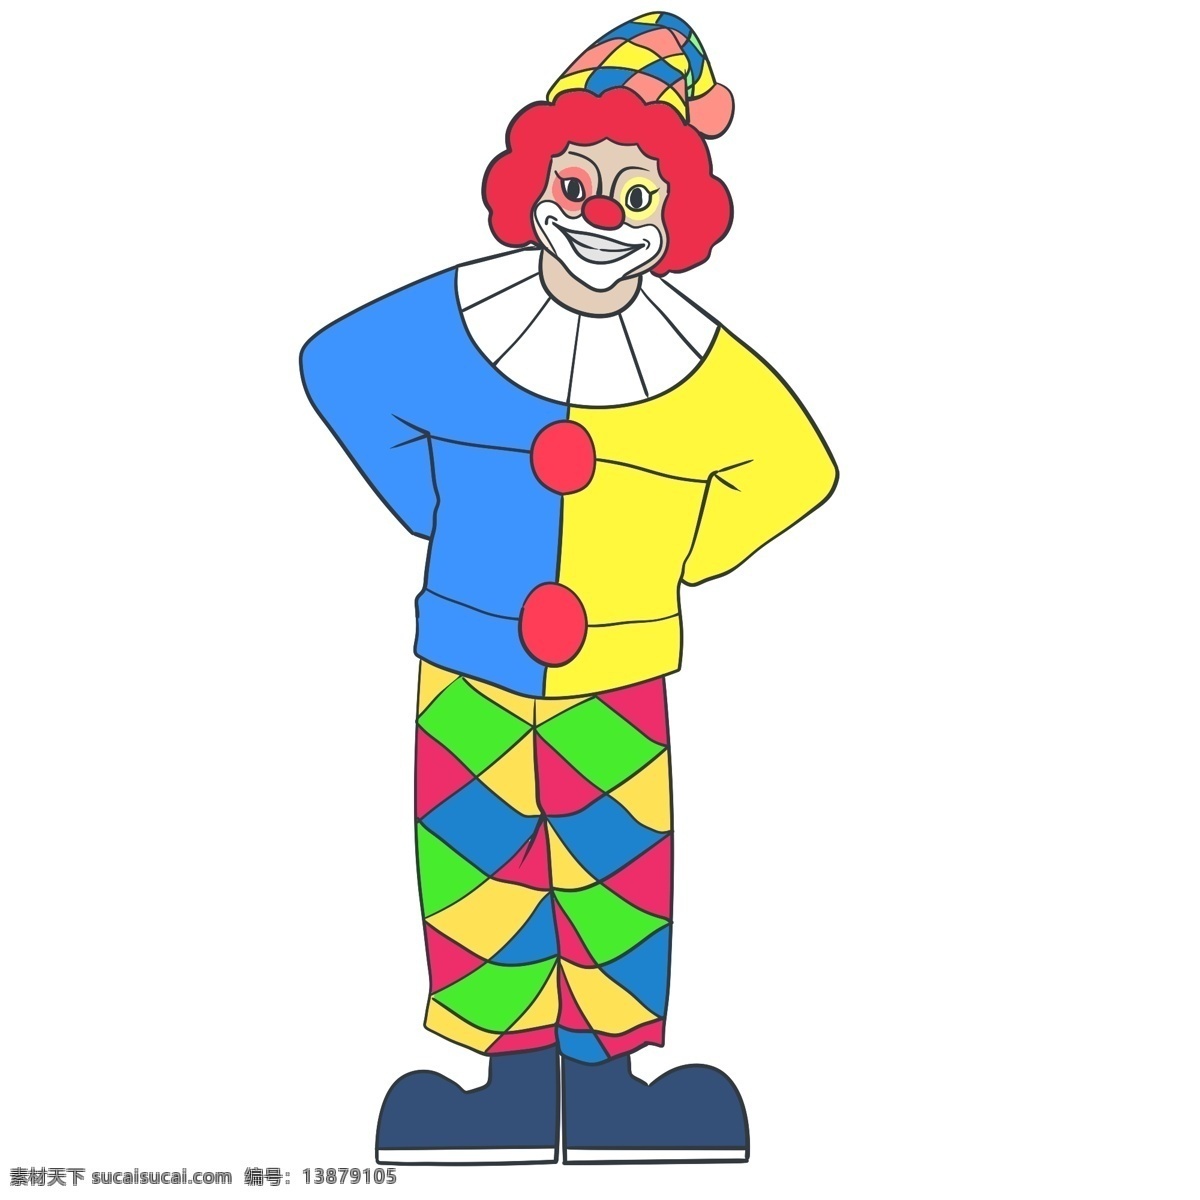 狂欢 派对 表演 小丑 表演小丑人物 彩色服装小丑 愚人 卡通小丑插画 愚人节 插画